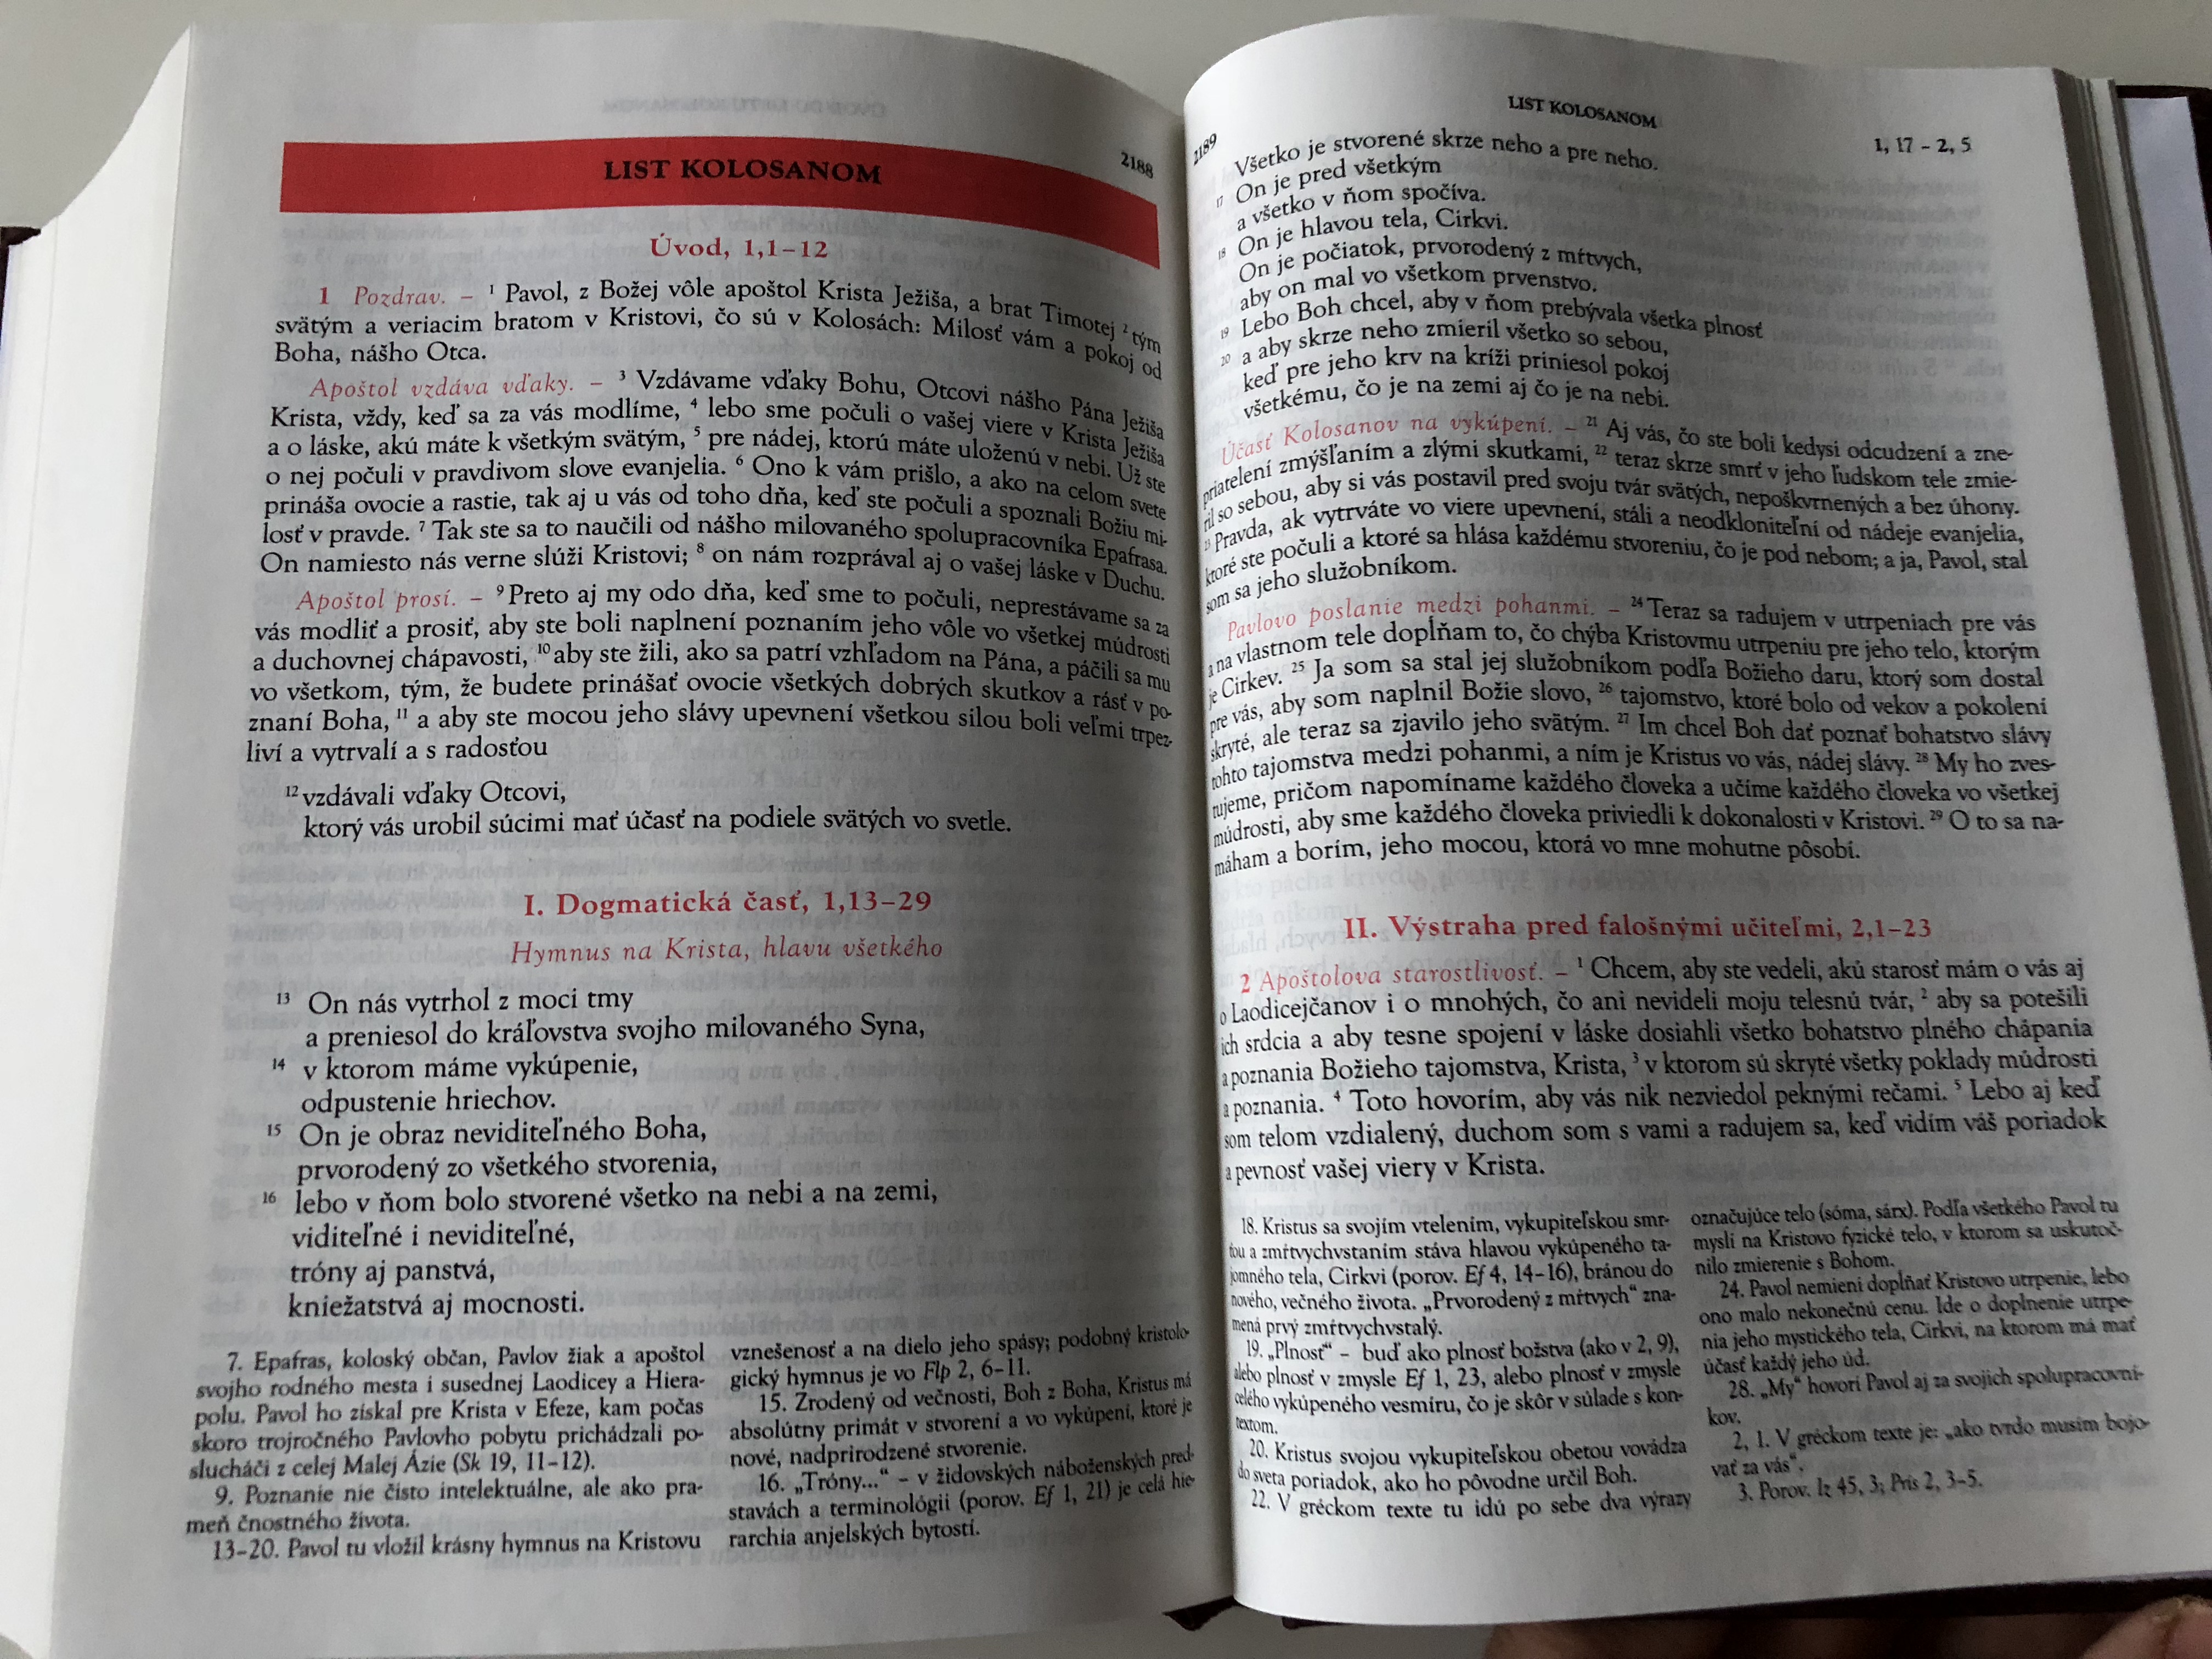 slovak-catholic-study-bible-large-print-with-study-notes-16-.jpg